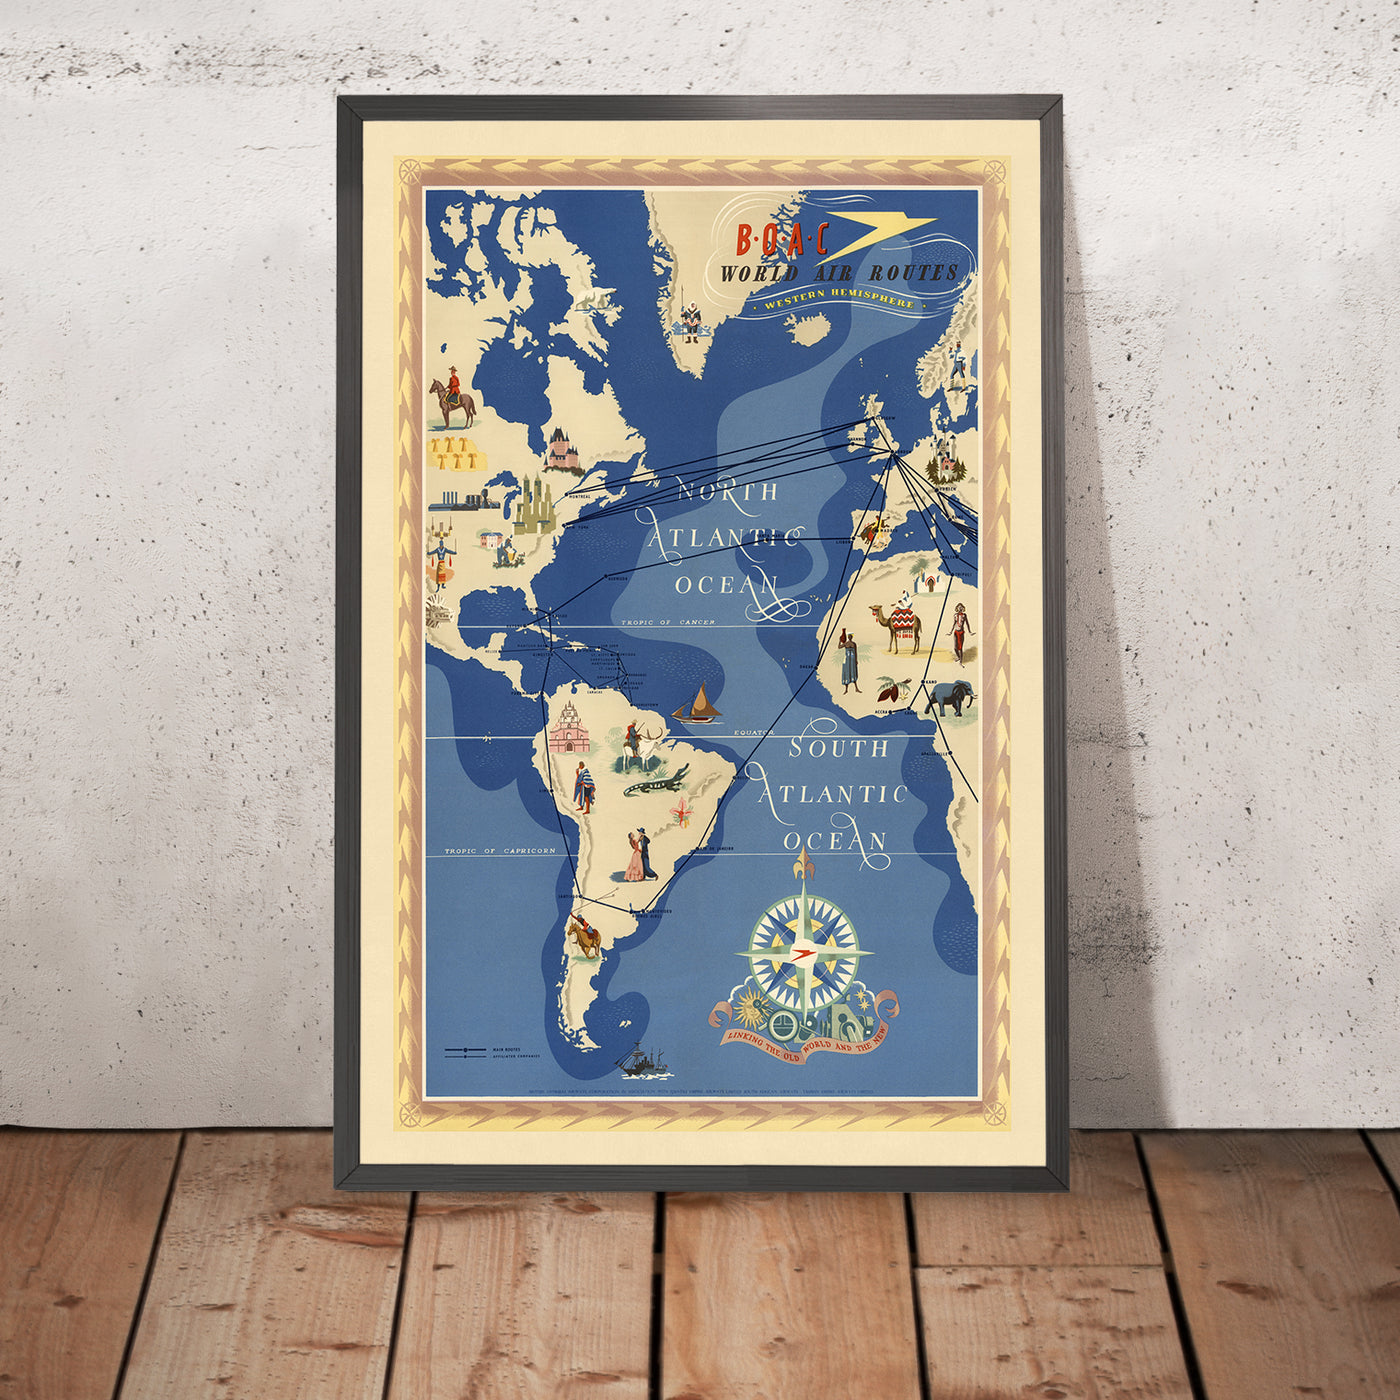 Mapa del Viejo Mundo de rutas aéreas del hemisferio occidental por BOAC, 1949: encarnando el amanecer de la era del jet, el estilo artístico pictórico y la representación temática de la conectividad global